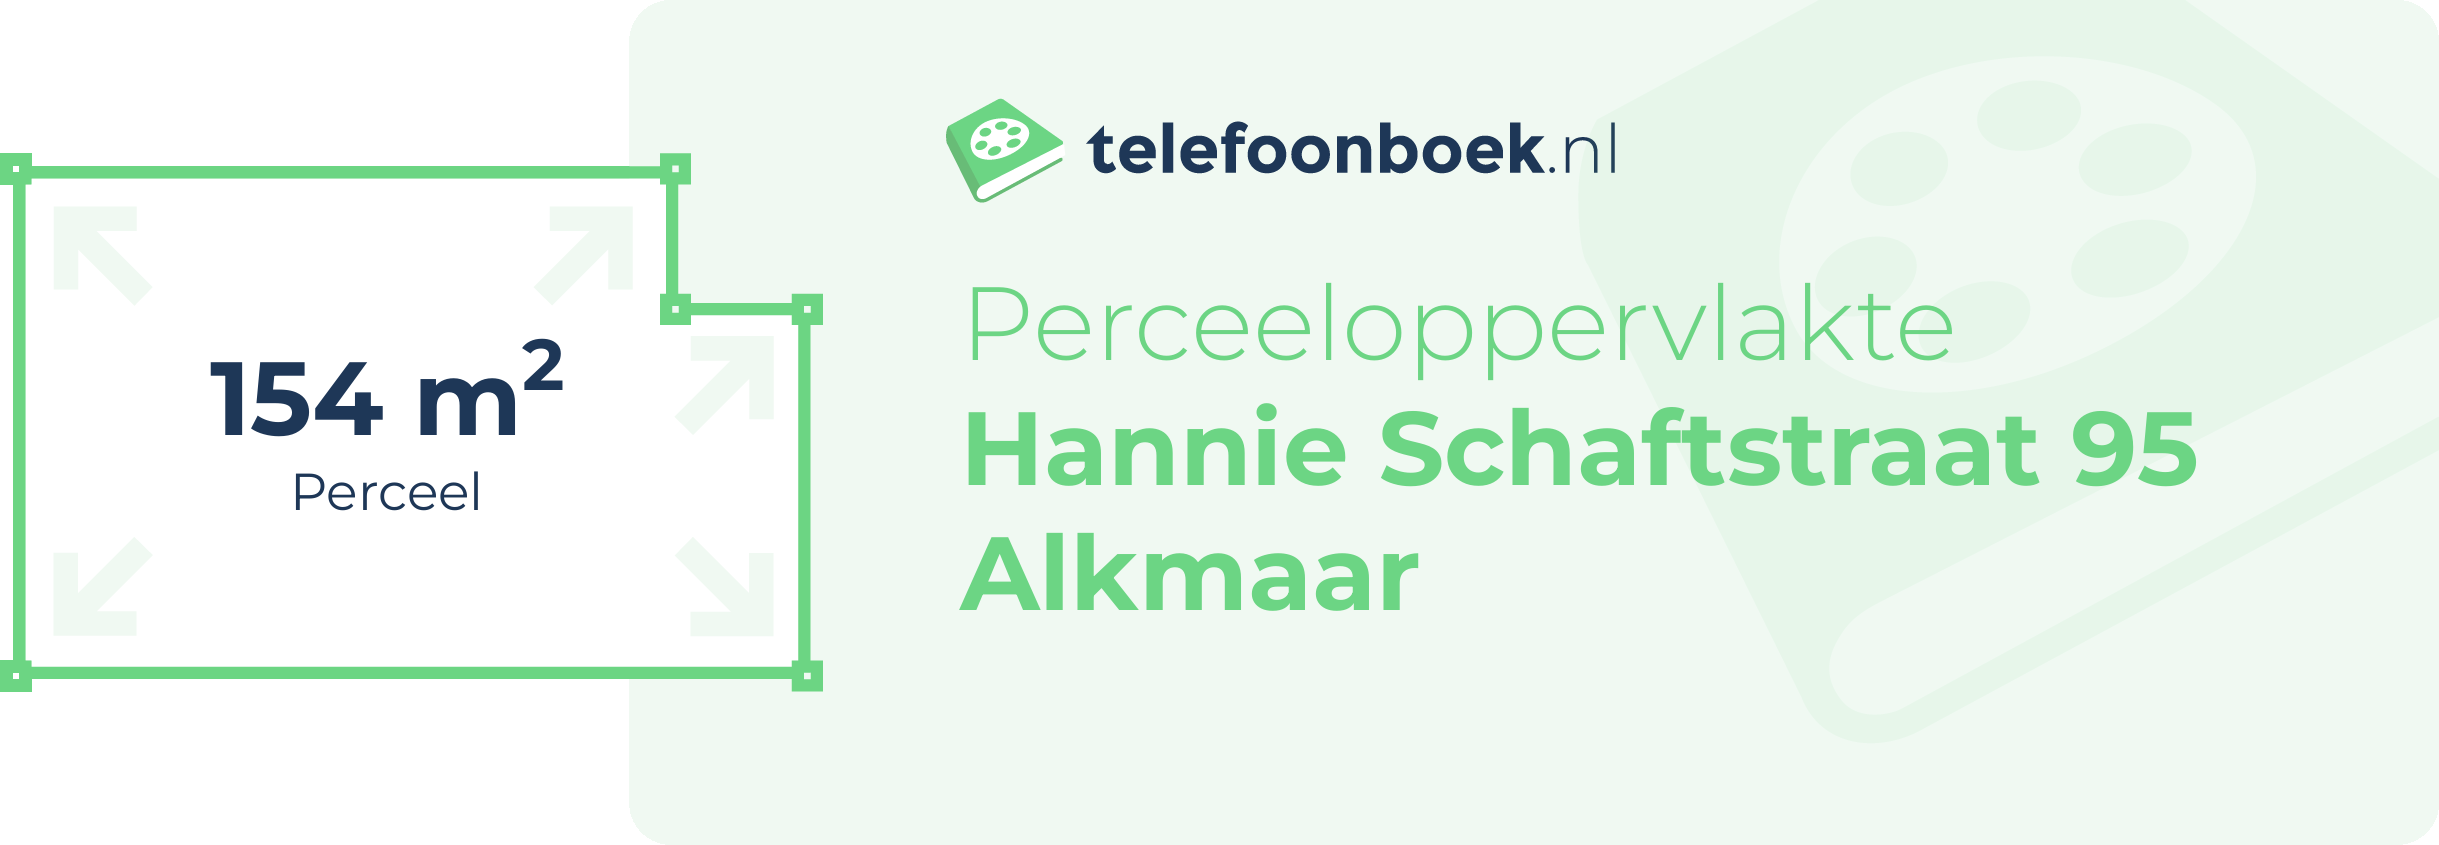 Perceeloppervlakte Hannie Schaftstraat 95 Alkmaar